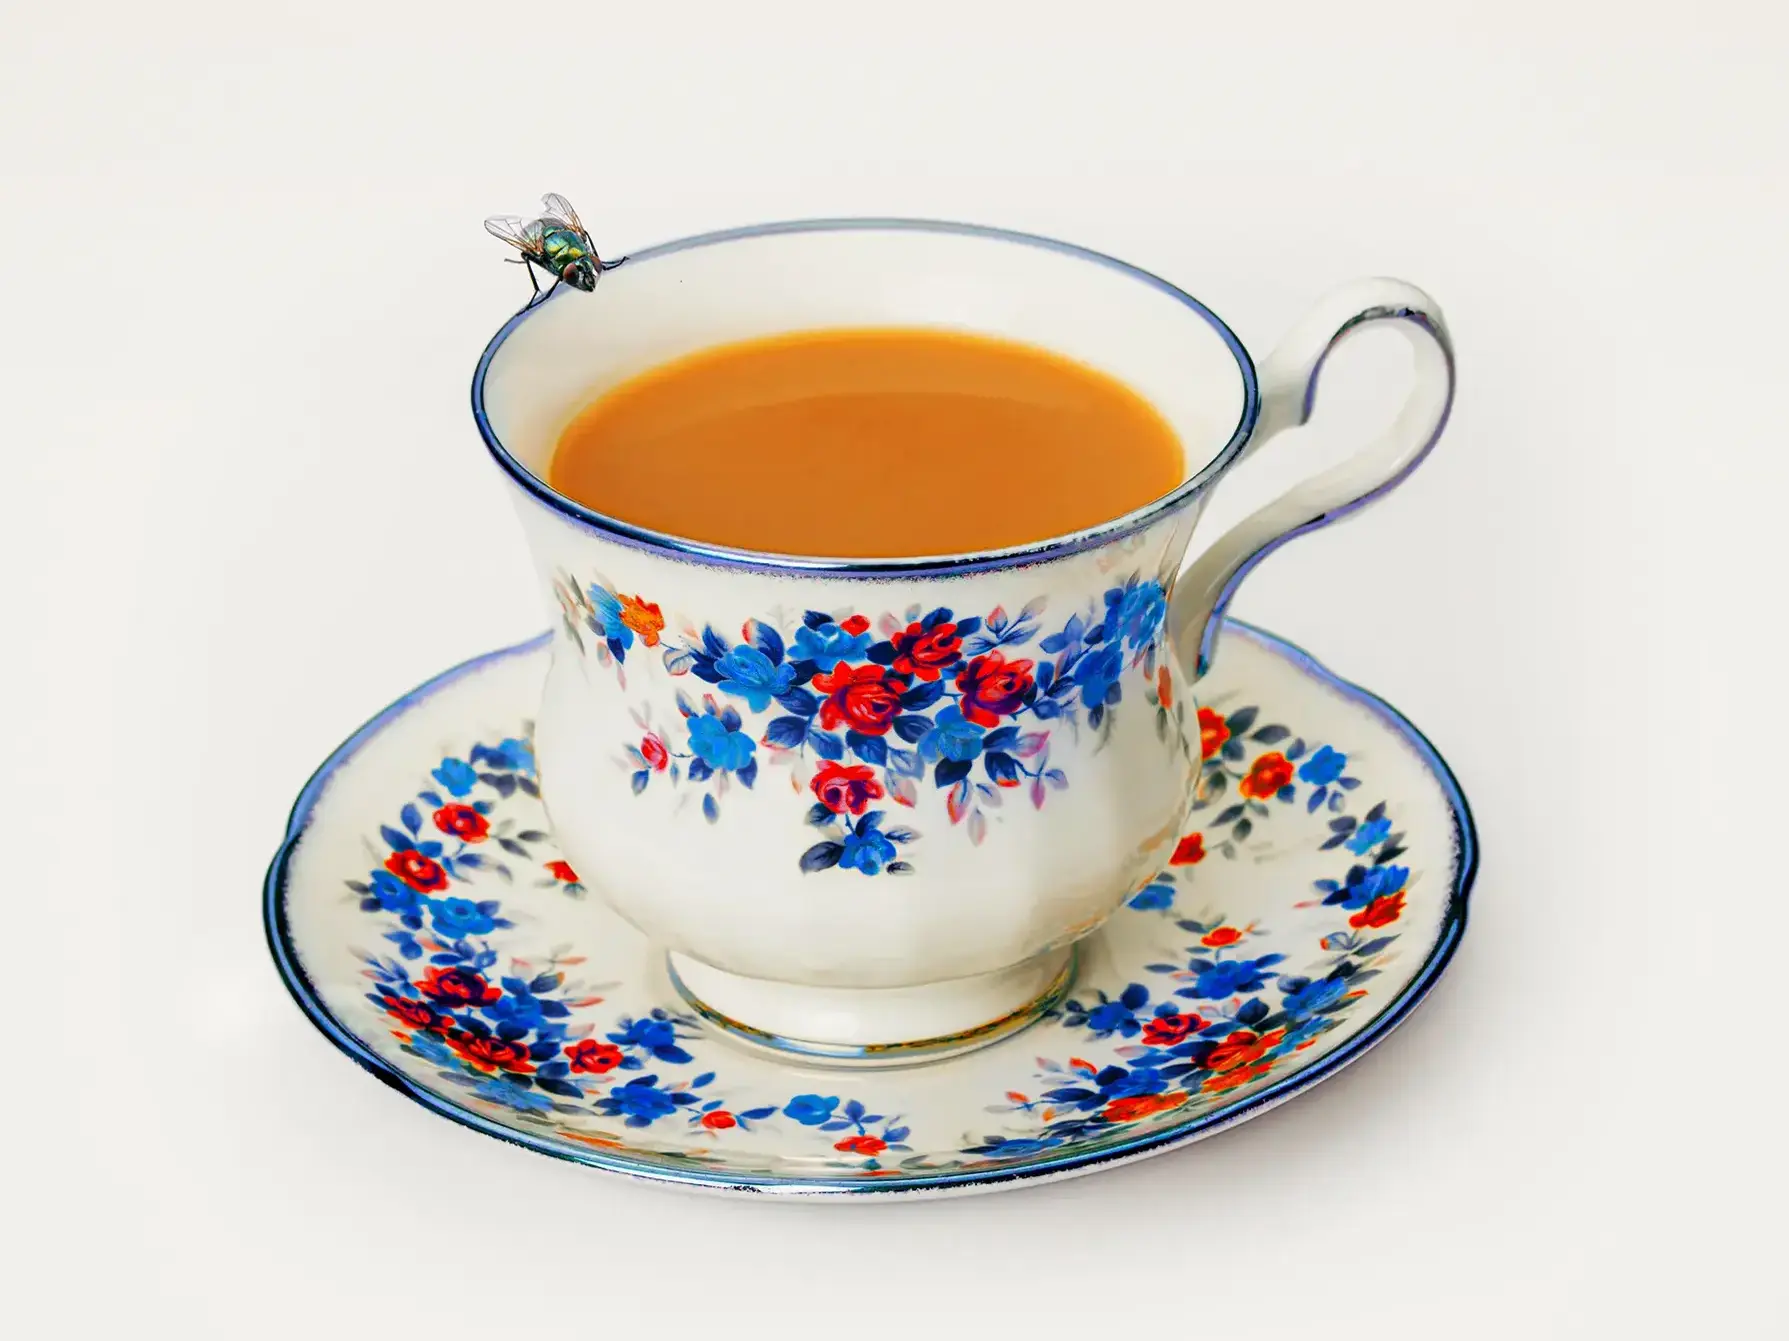 A cup of tea in a fancy teacup on a fancy plate